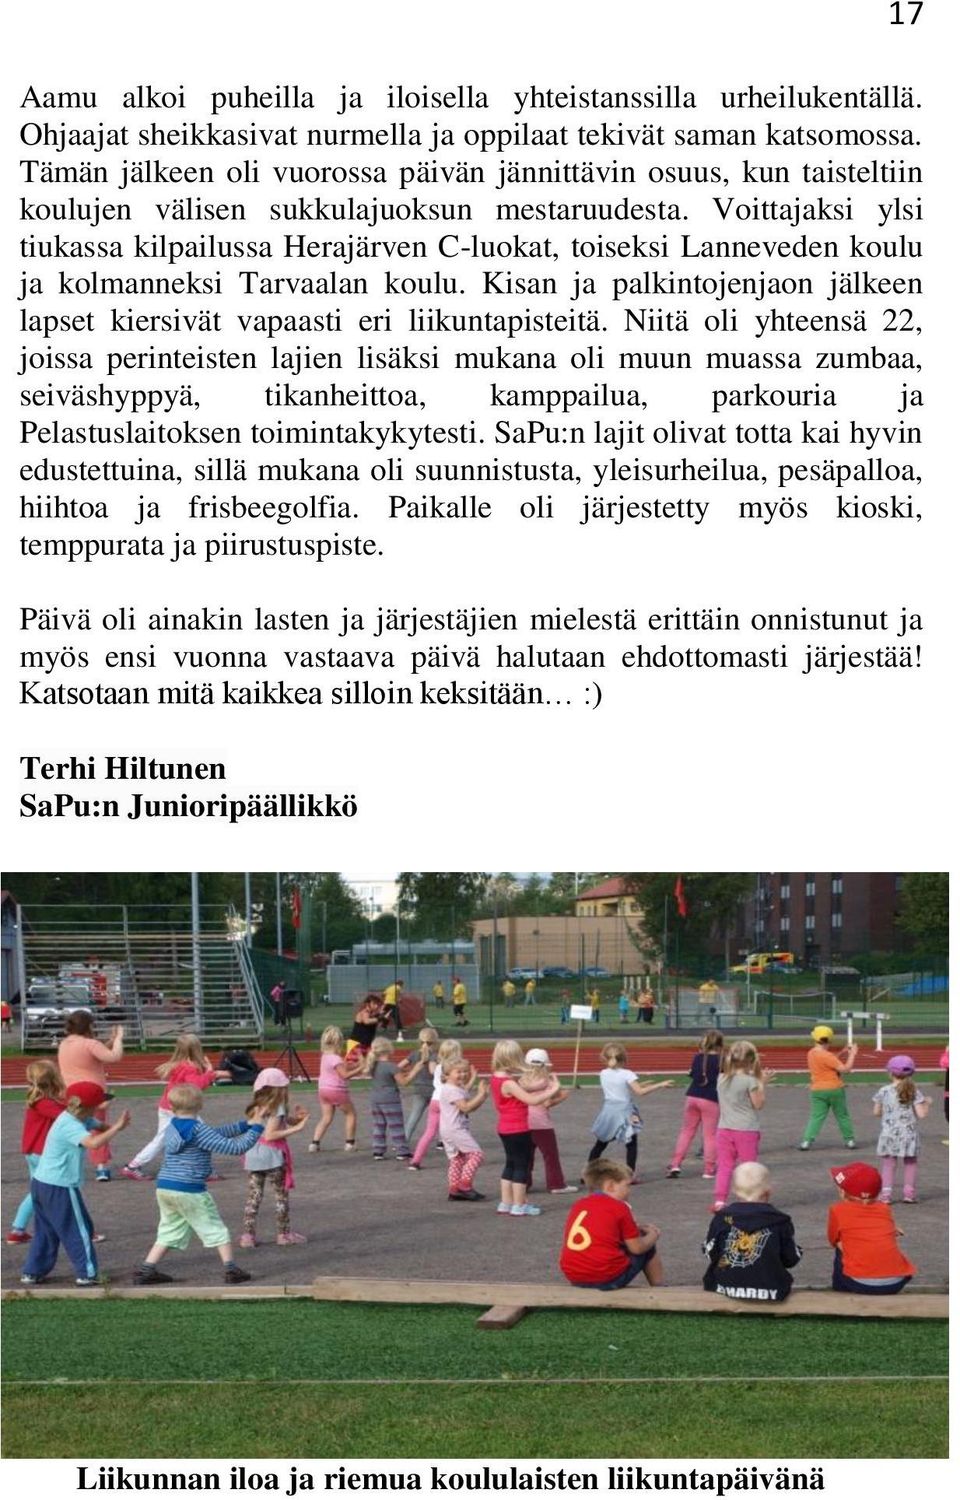 Voittajaksi ylsi tiukassa kilpailussa Herajärven C-luokat, toiseksi Lanneveden koulu ja kolmanneksi Tarvaalan koulu. Kisan ja palkintojenjaon jälkeen lapset kiersivät vapaasti eri liikuntapisteitä.